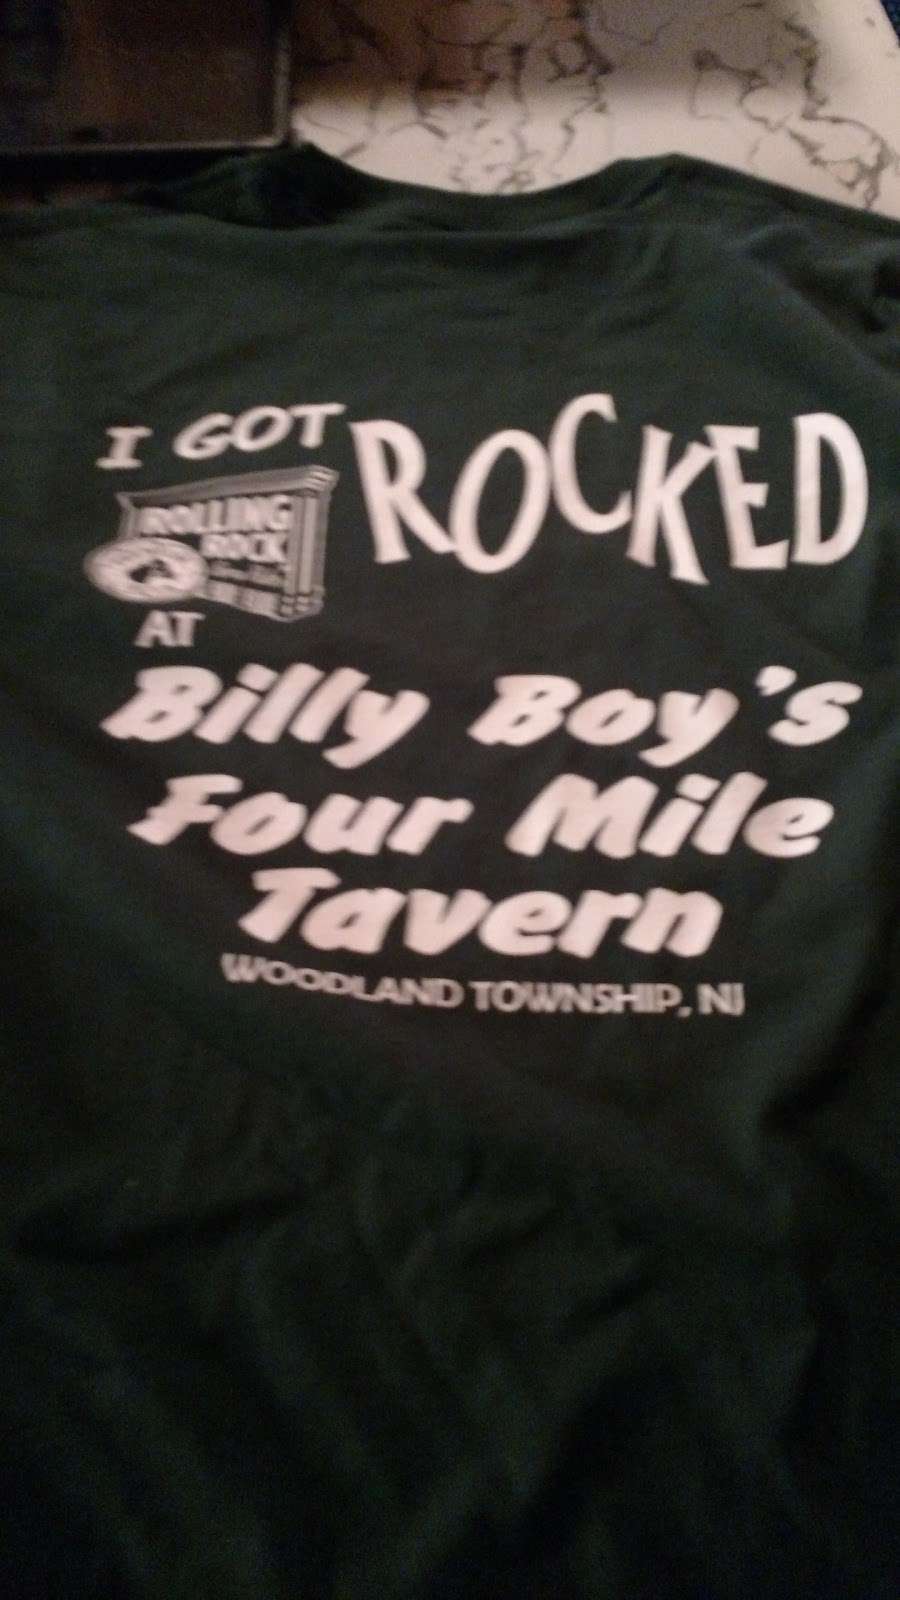 Billy Boys Four Mile Tavern | 12 NJ-72, New Lisbon, NJ 08064, USA | Phone: (609) 726-1355